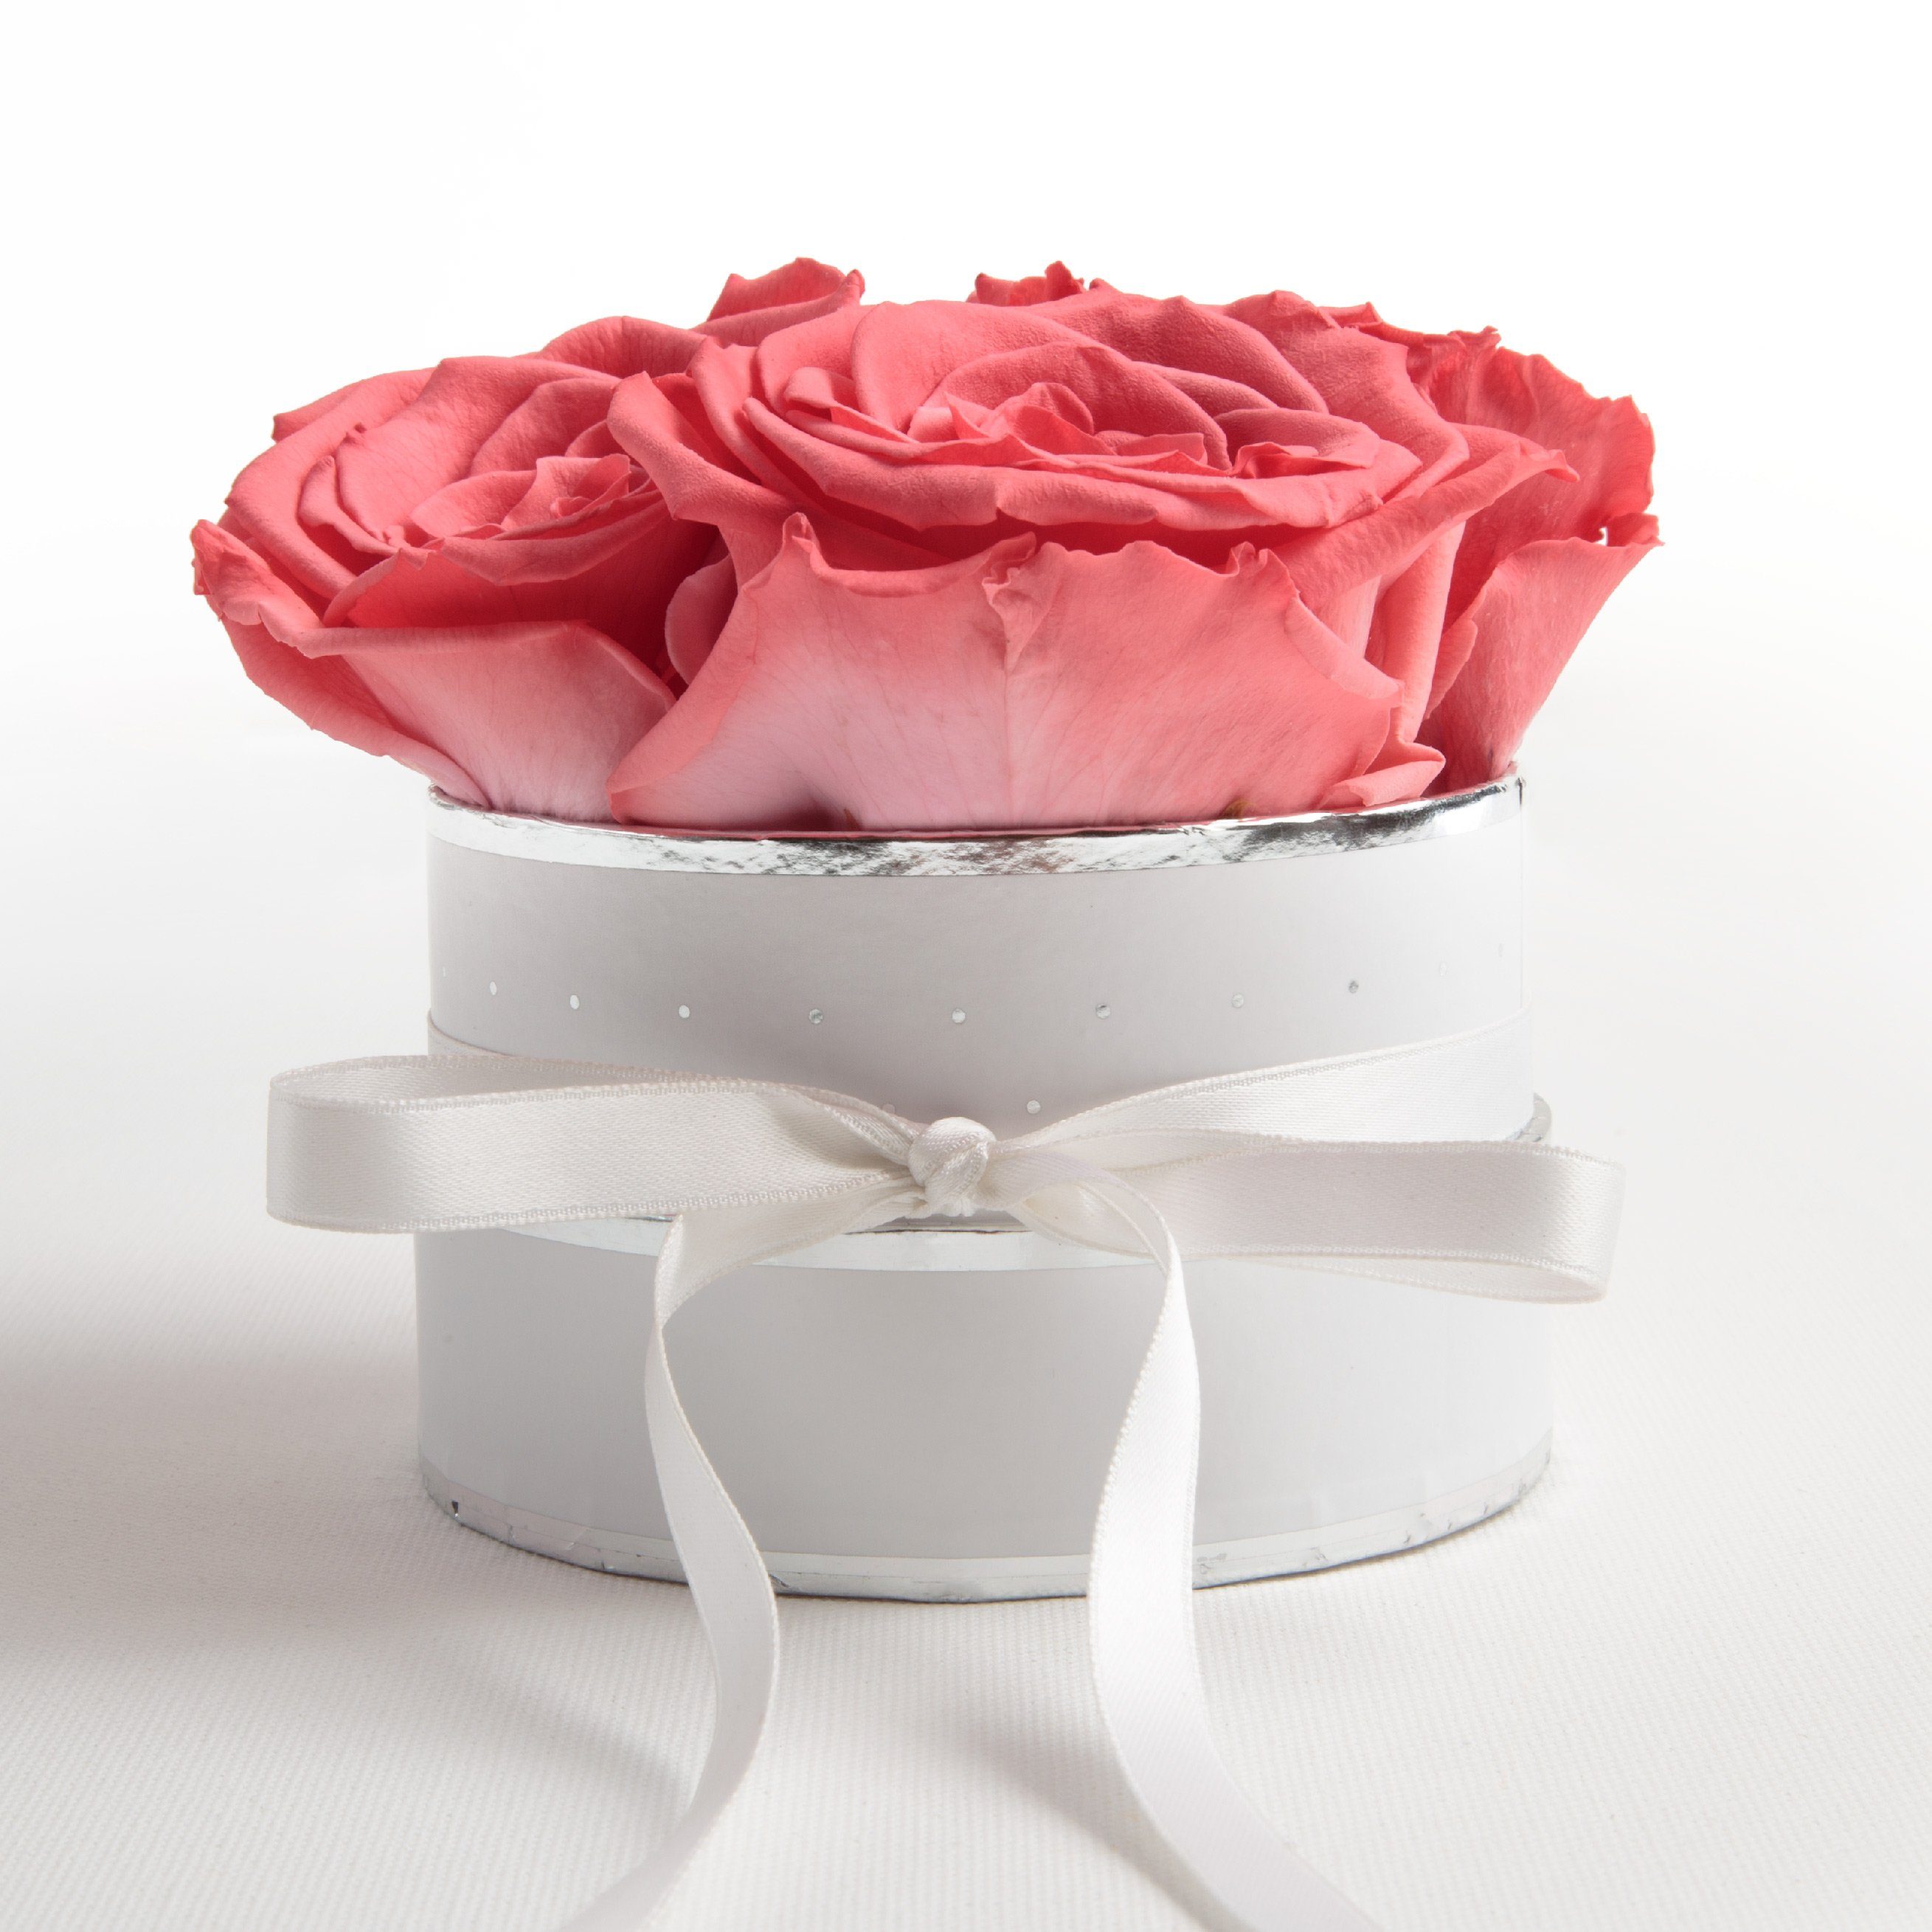 Kunstblume Infinity Rosenbox weiß rund 4 konservierte Rosen inklusiv Geschenkbox Rose, ROSEMARIE SCHULZ Heidelberg, Höhe 10 cm, echte Rosen haltbar 3 Jahre Koralle